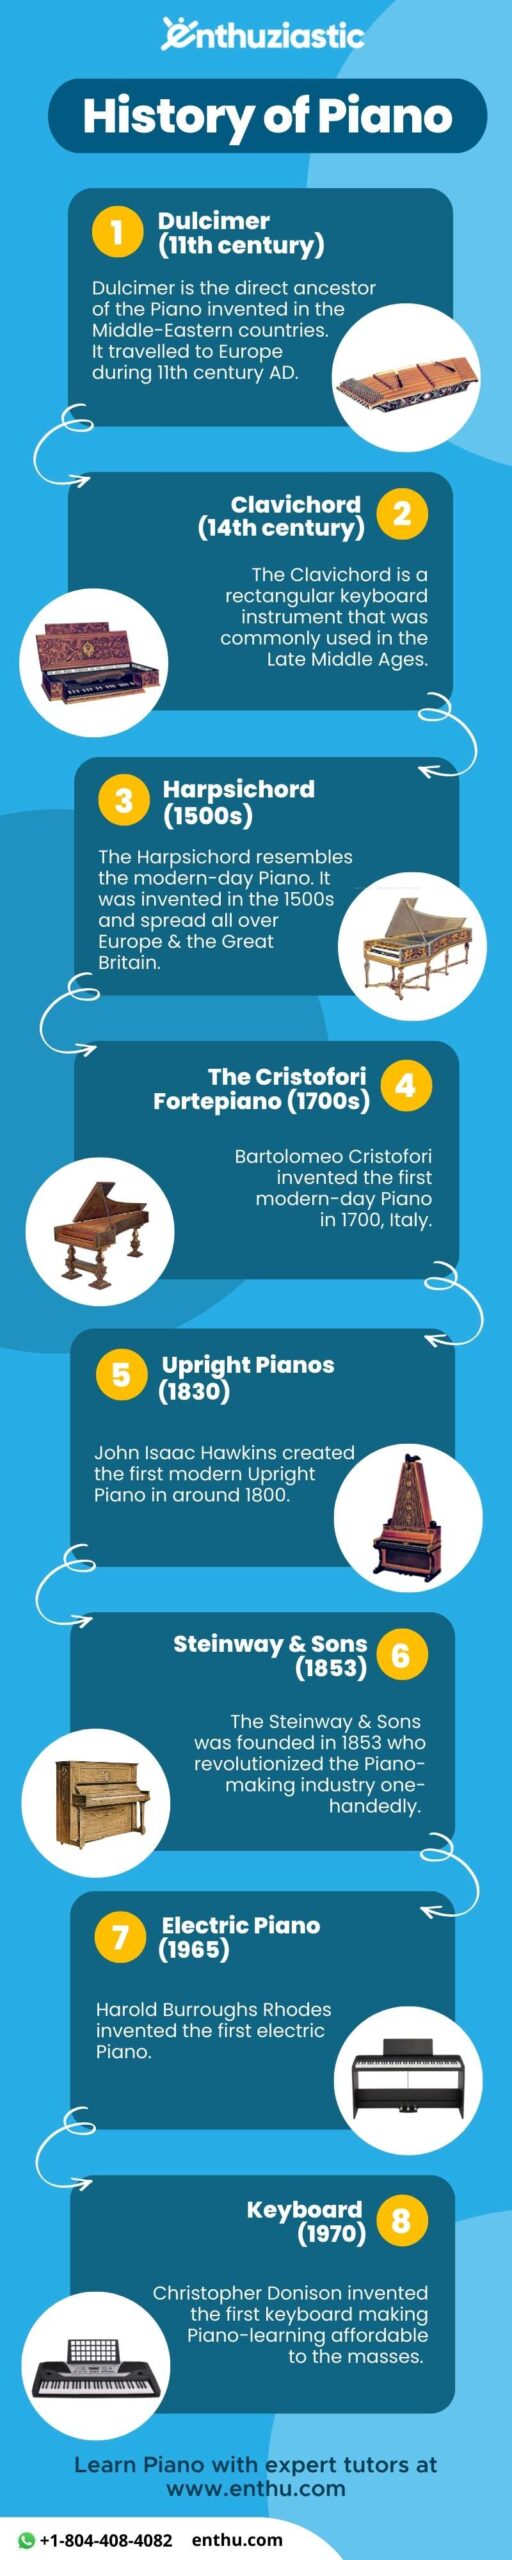 history of piano